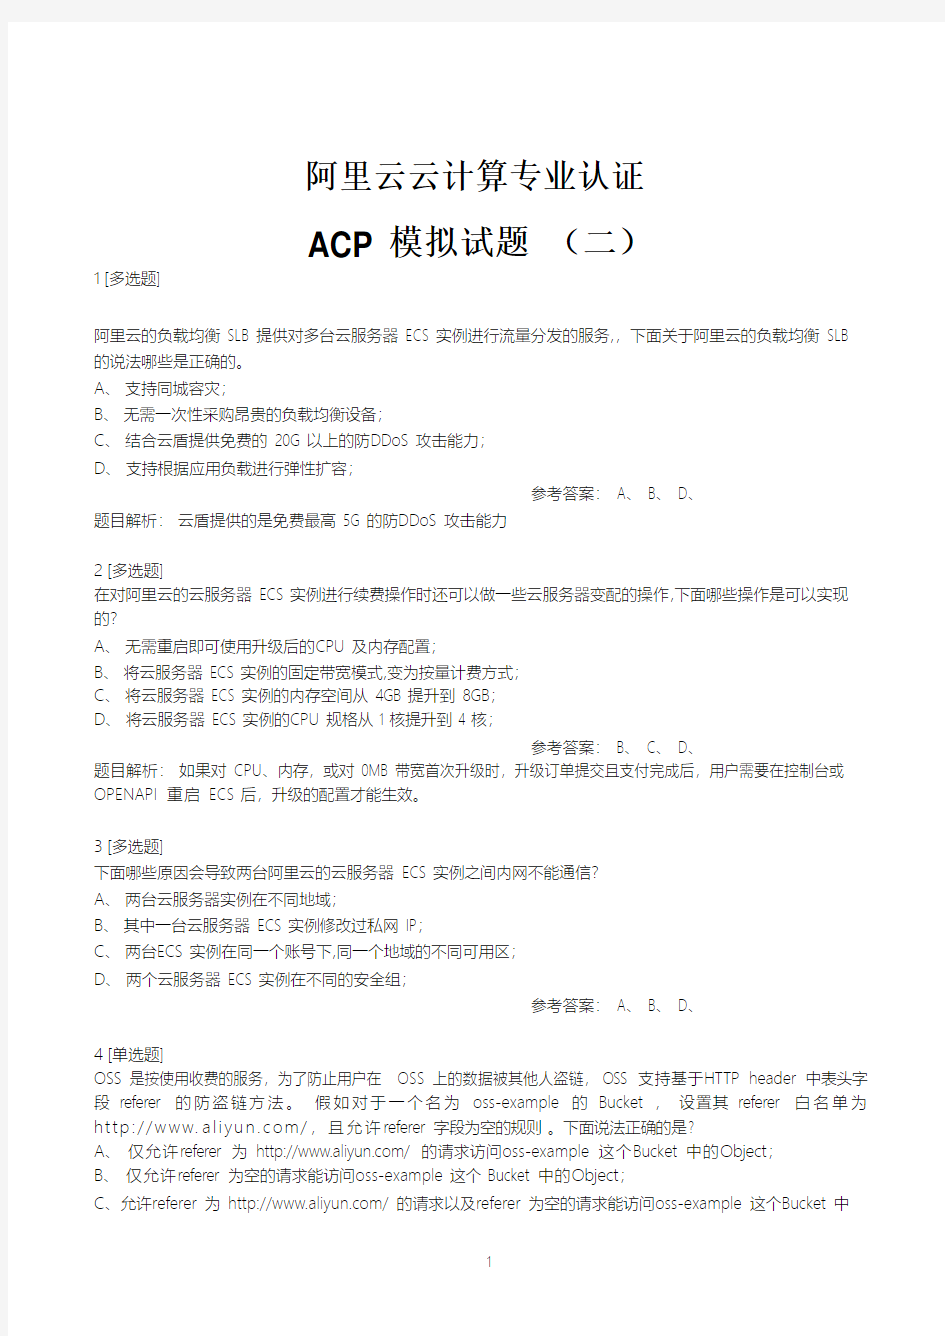 阿里云云计算专业认证考试ACP模拟题二